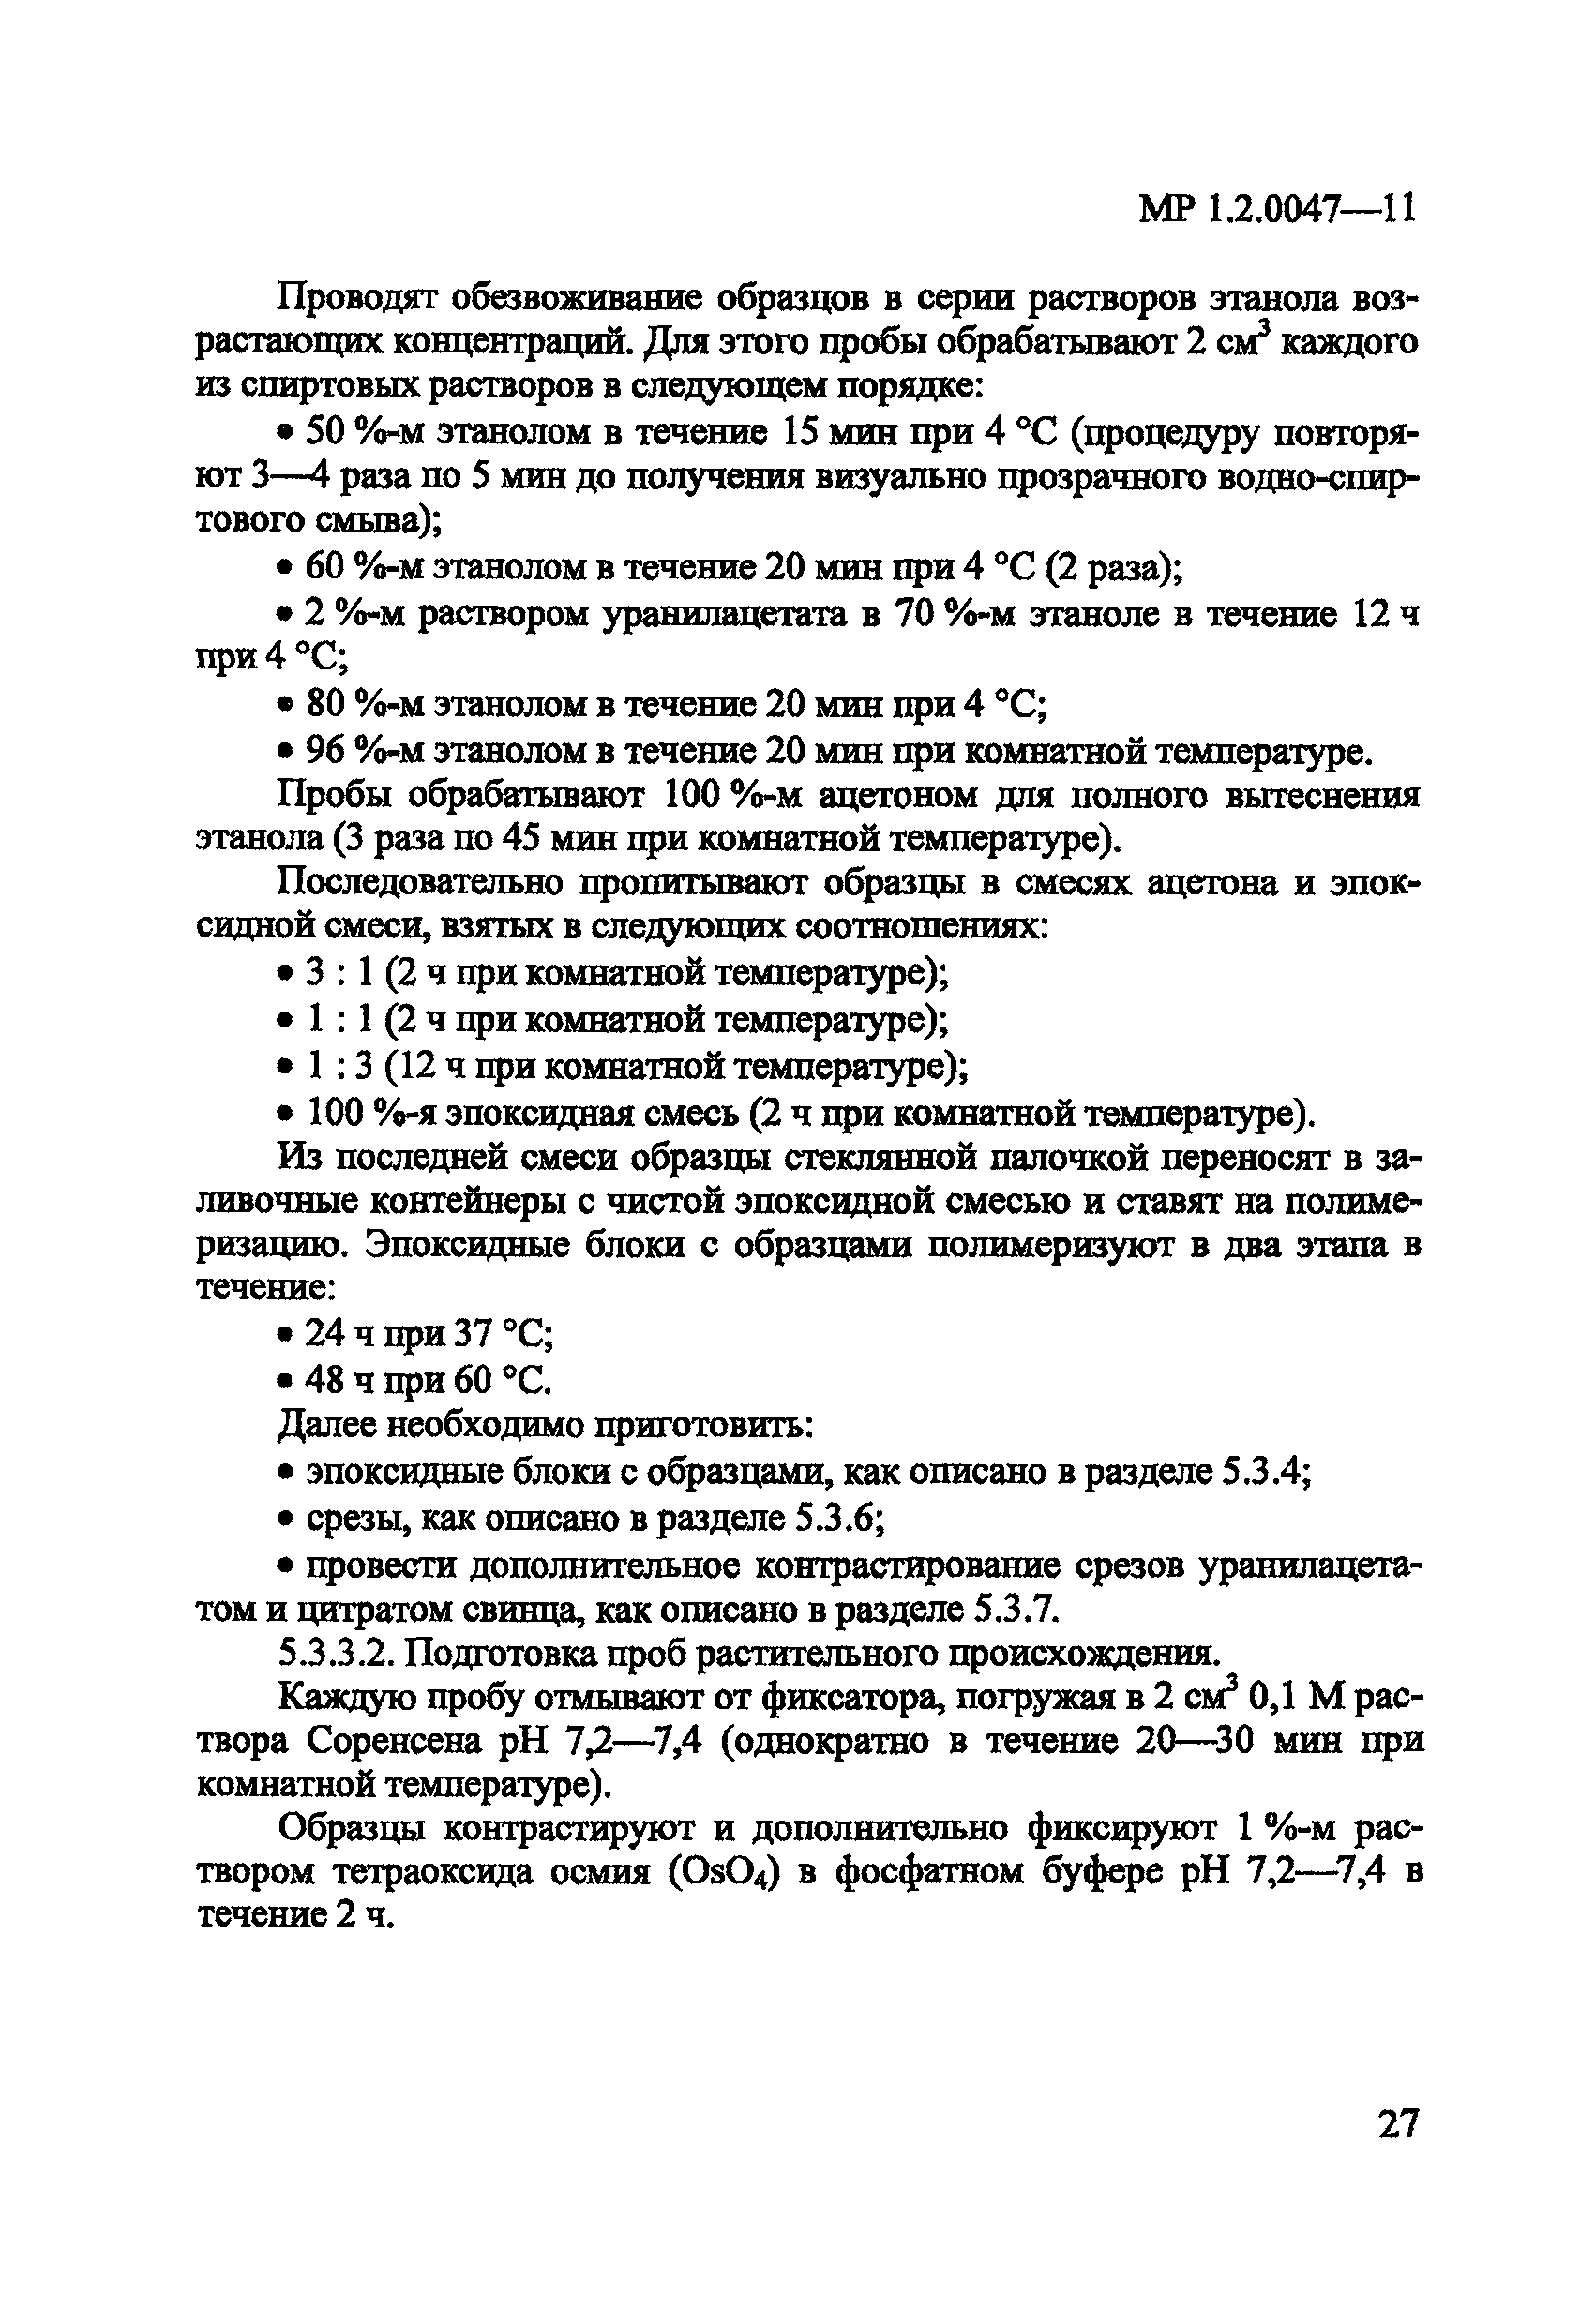 МР 1.2.0047-11